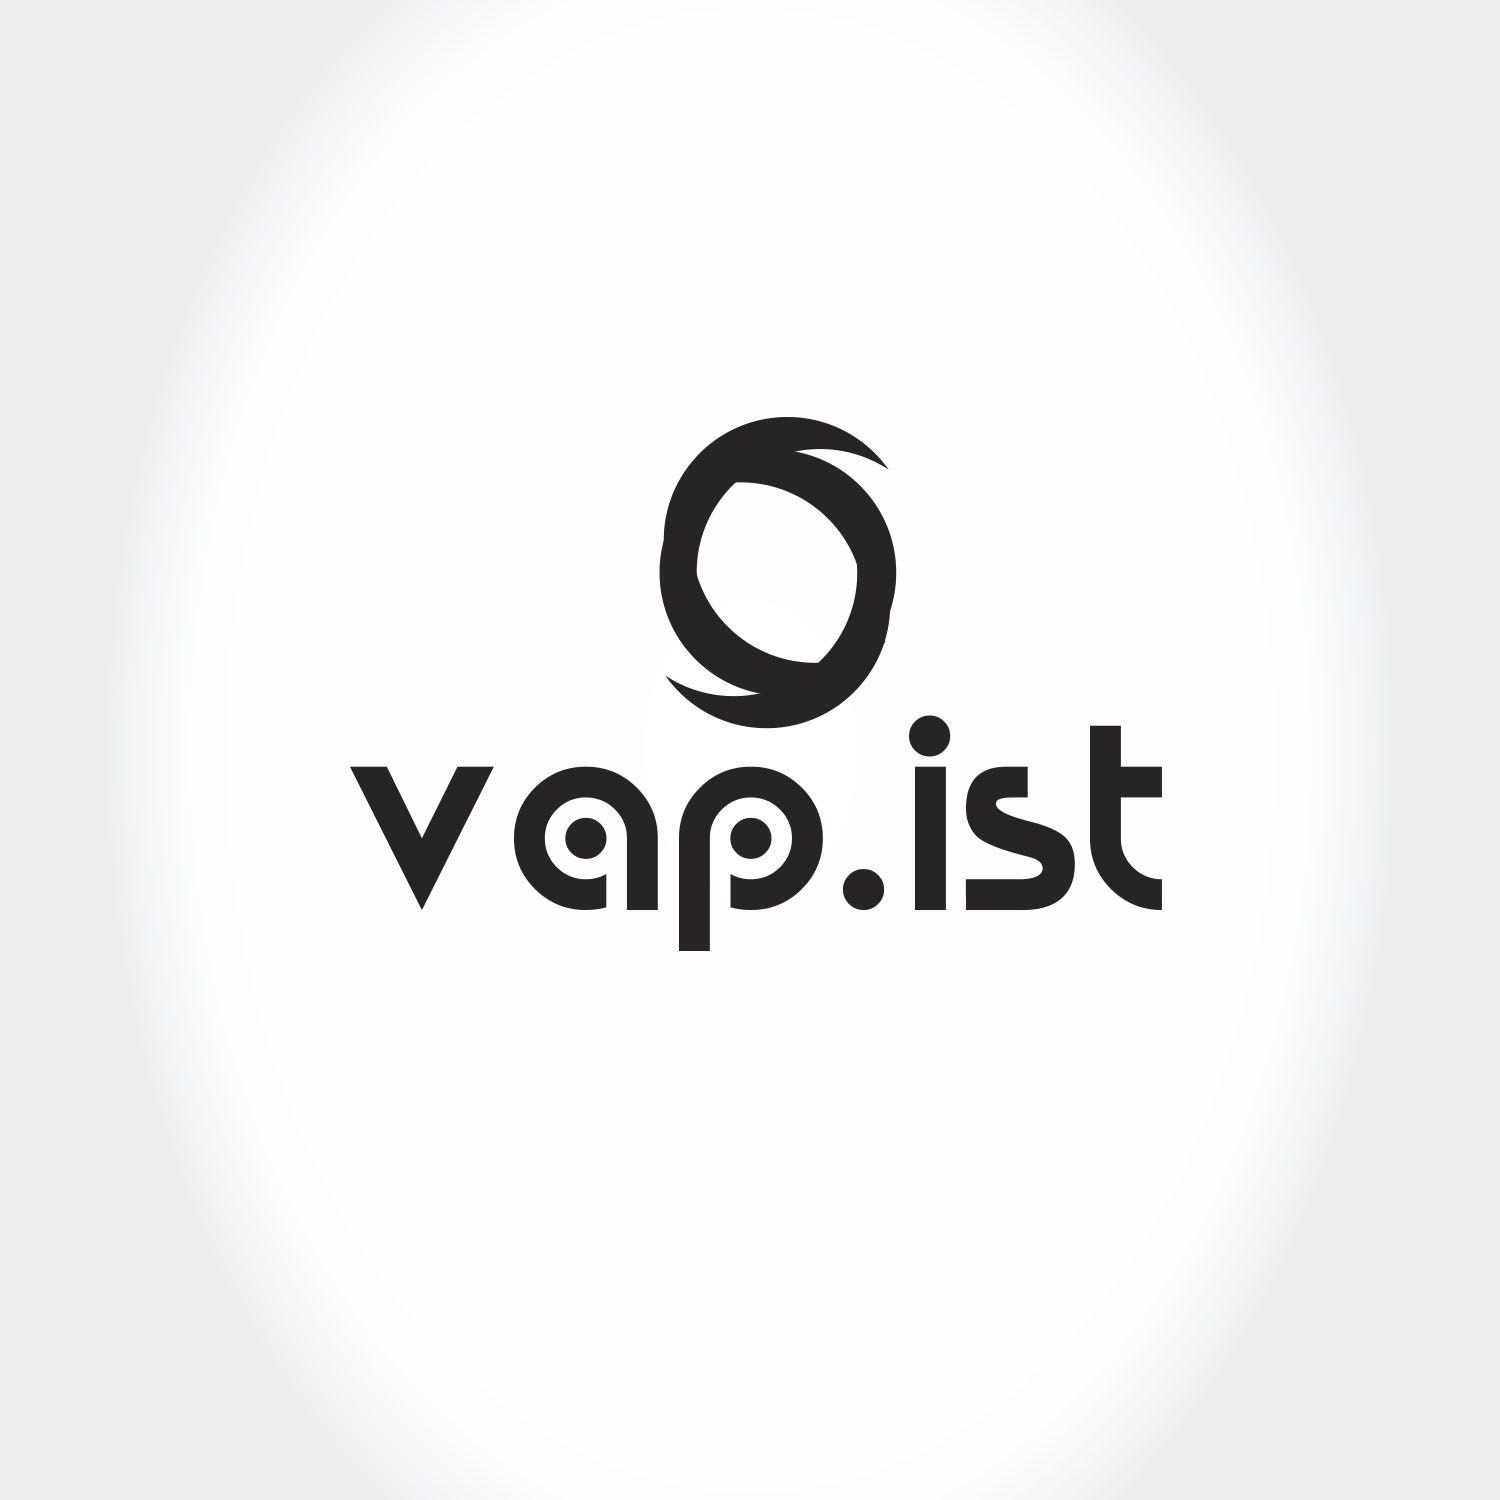 VAP Logo - Modern, Upmarket, Hardware Logo Design for Vap.ist by Rheyn. Design